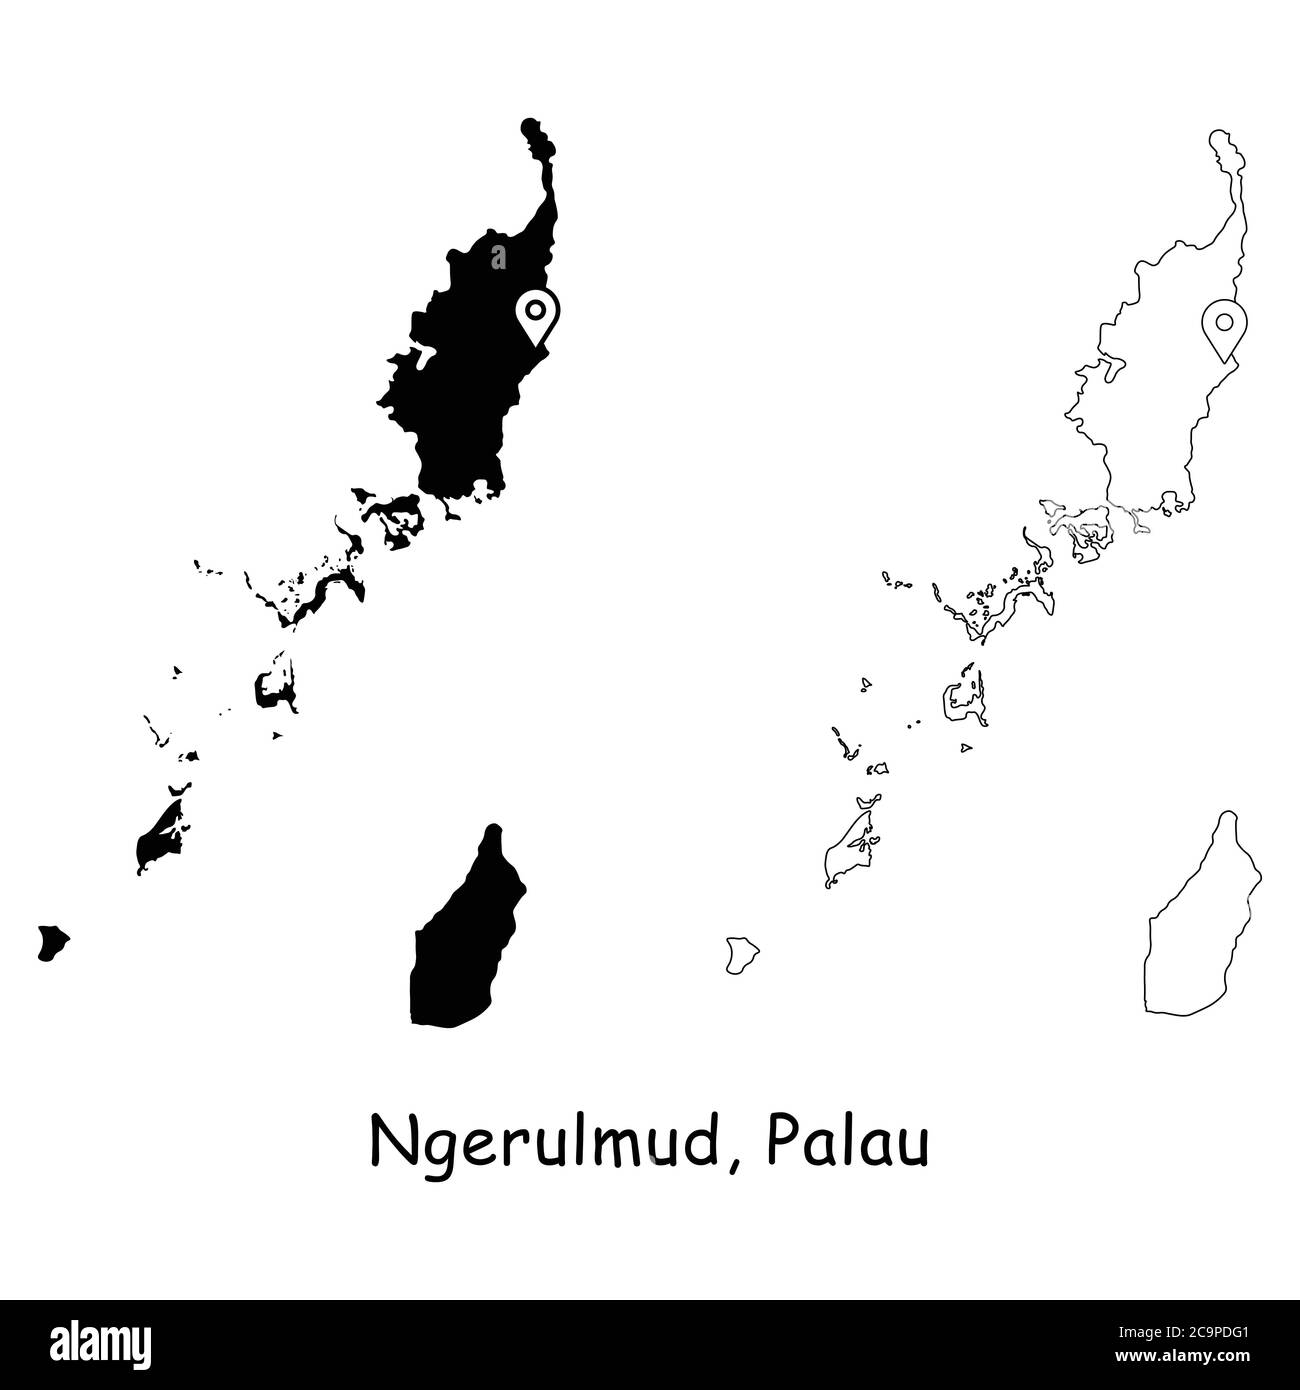 Ngerulmud, Repubblica di Palau. Mappa dettagliata del Paese con il pin della posizione sulla città capitale. Silhouette nera e mappe di contorno isolate su sfondo bianco. Illustrazione Vettoriale